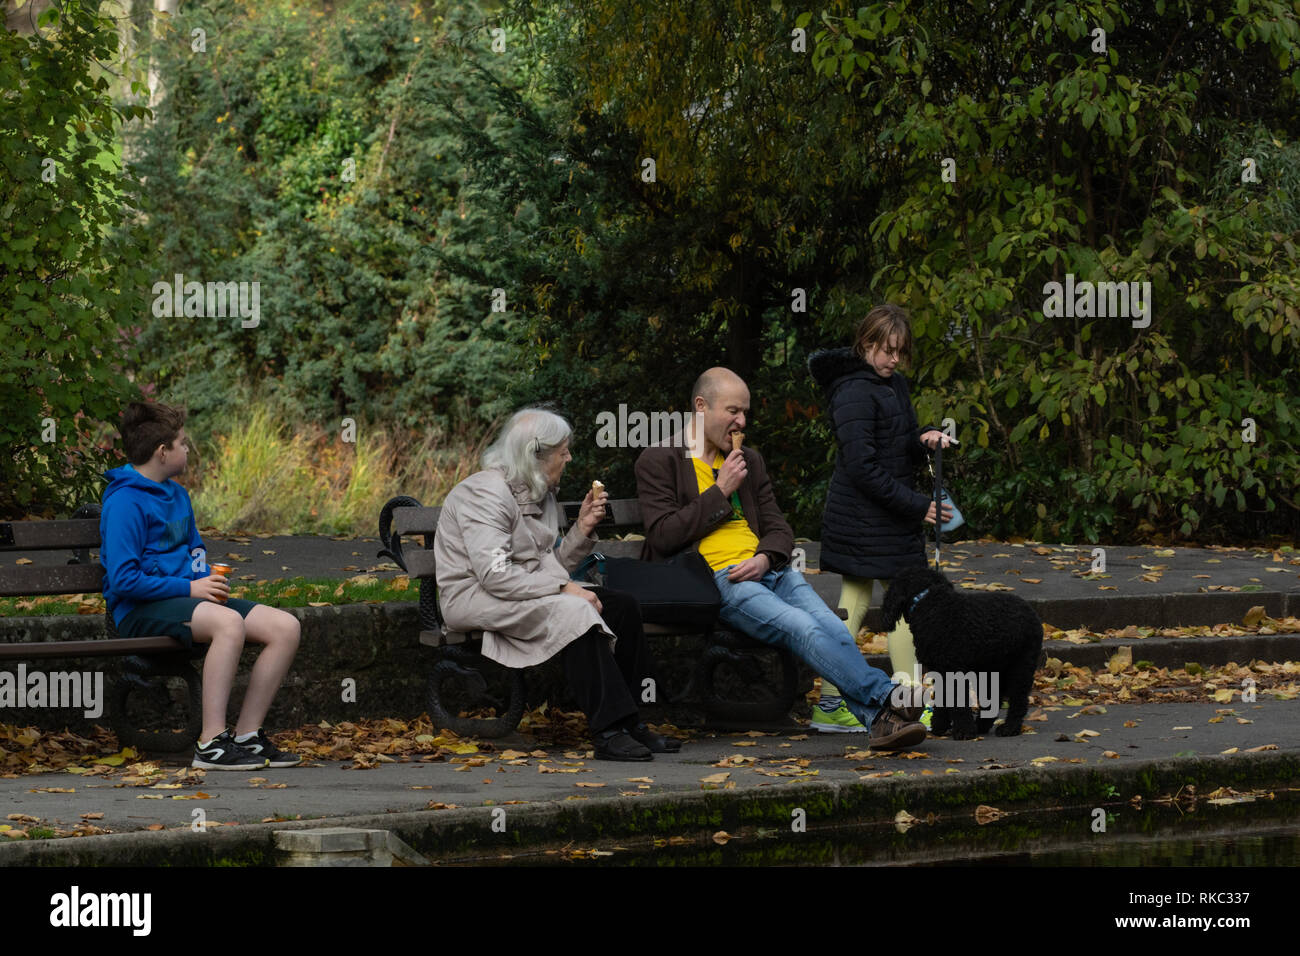 Une famille s'est assise sur des sièges de parc en bois et apprécier des glaces et des rafraîchissements, Valley Gardens, Harrogate, North Yorkshire, Angleterre, ROYAUME-UNI. Banque D'Images